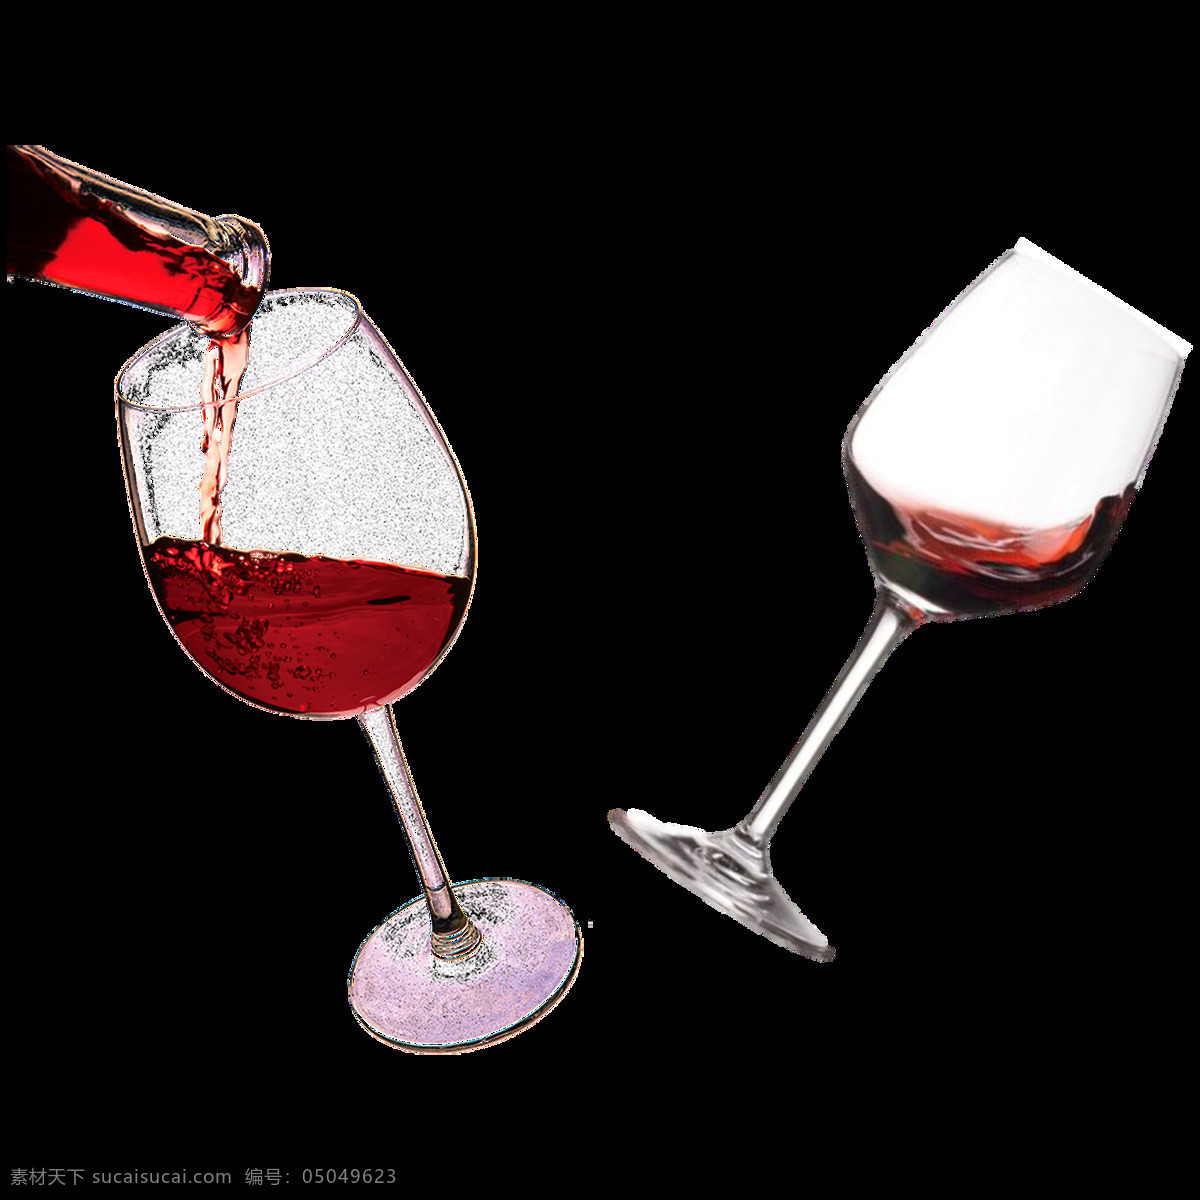 玻璃杯 葡萄酒 免 抠 透明 图 层 背景 葡萄酒素材 红酒图片 葡萄酒摄影 洋葡萄酒 葡萄酒杯 葡萄酒png 黄葡萄酒 红酒背景素材 红酒图片素材 红酒创意广告